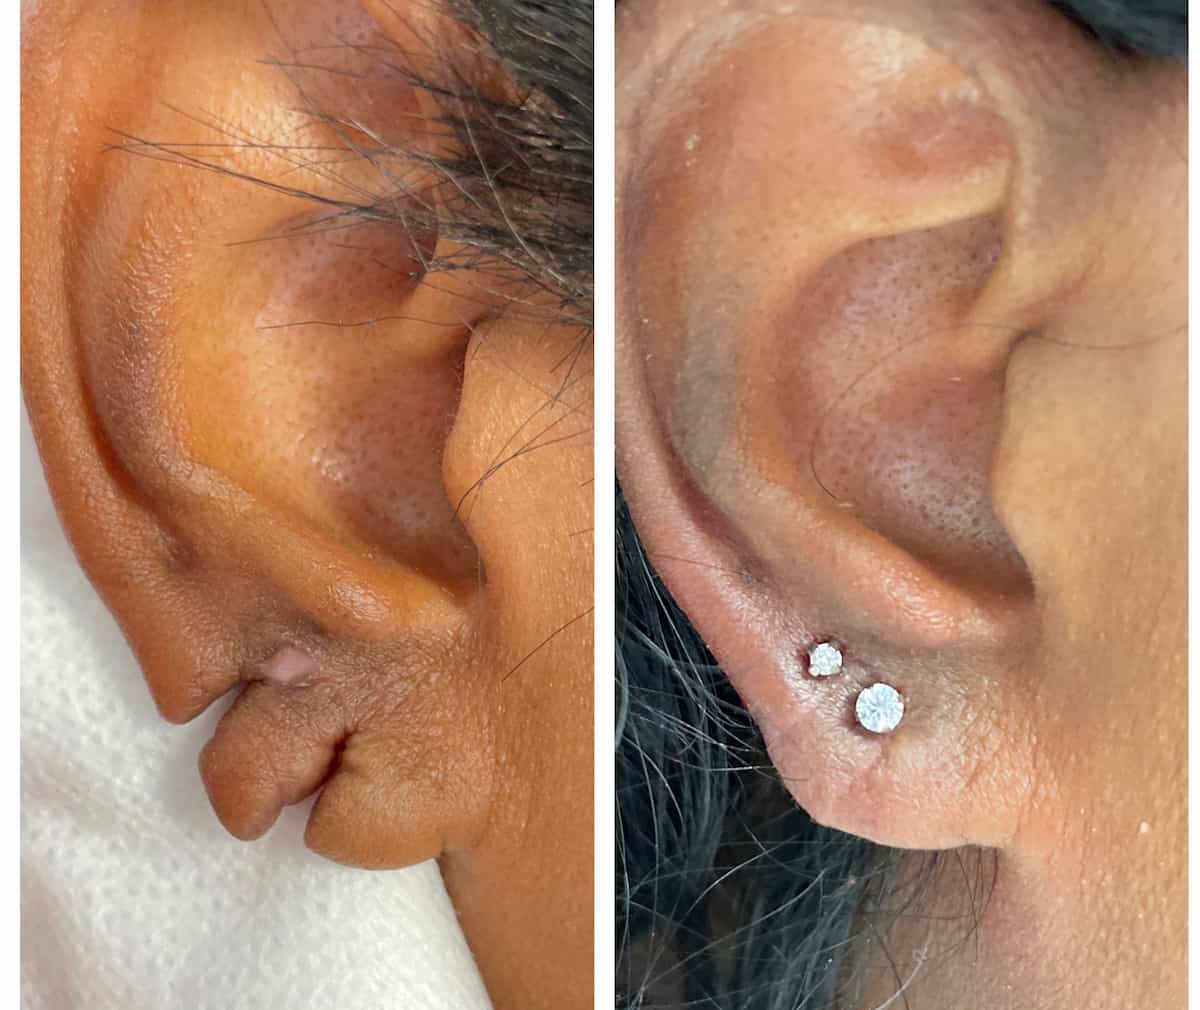 Polaris - Ear Lobe Repair